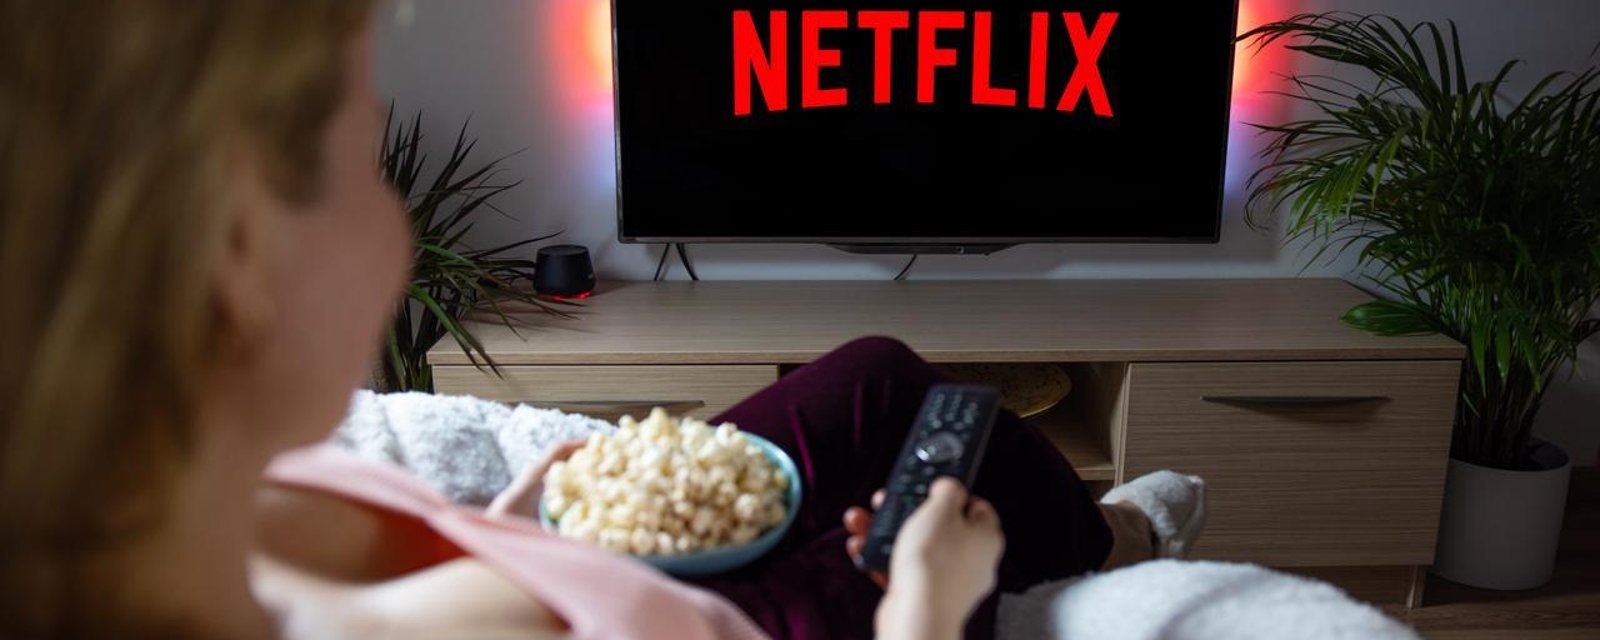 Une bien mauvaise nouvelle attend des millions d'utilisateurs sur Netflix